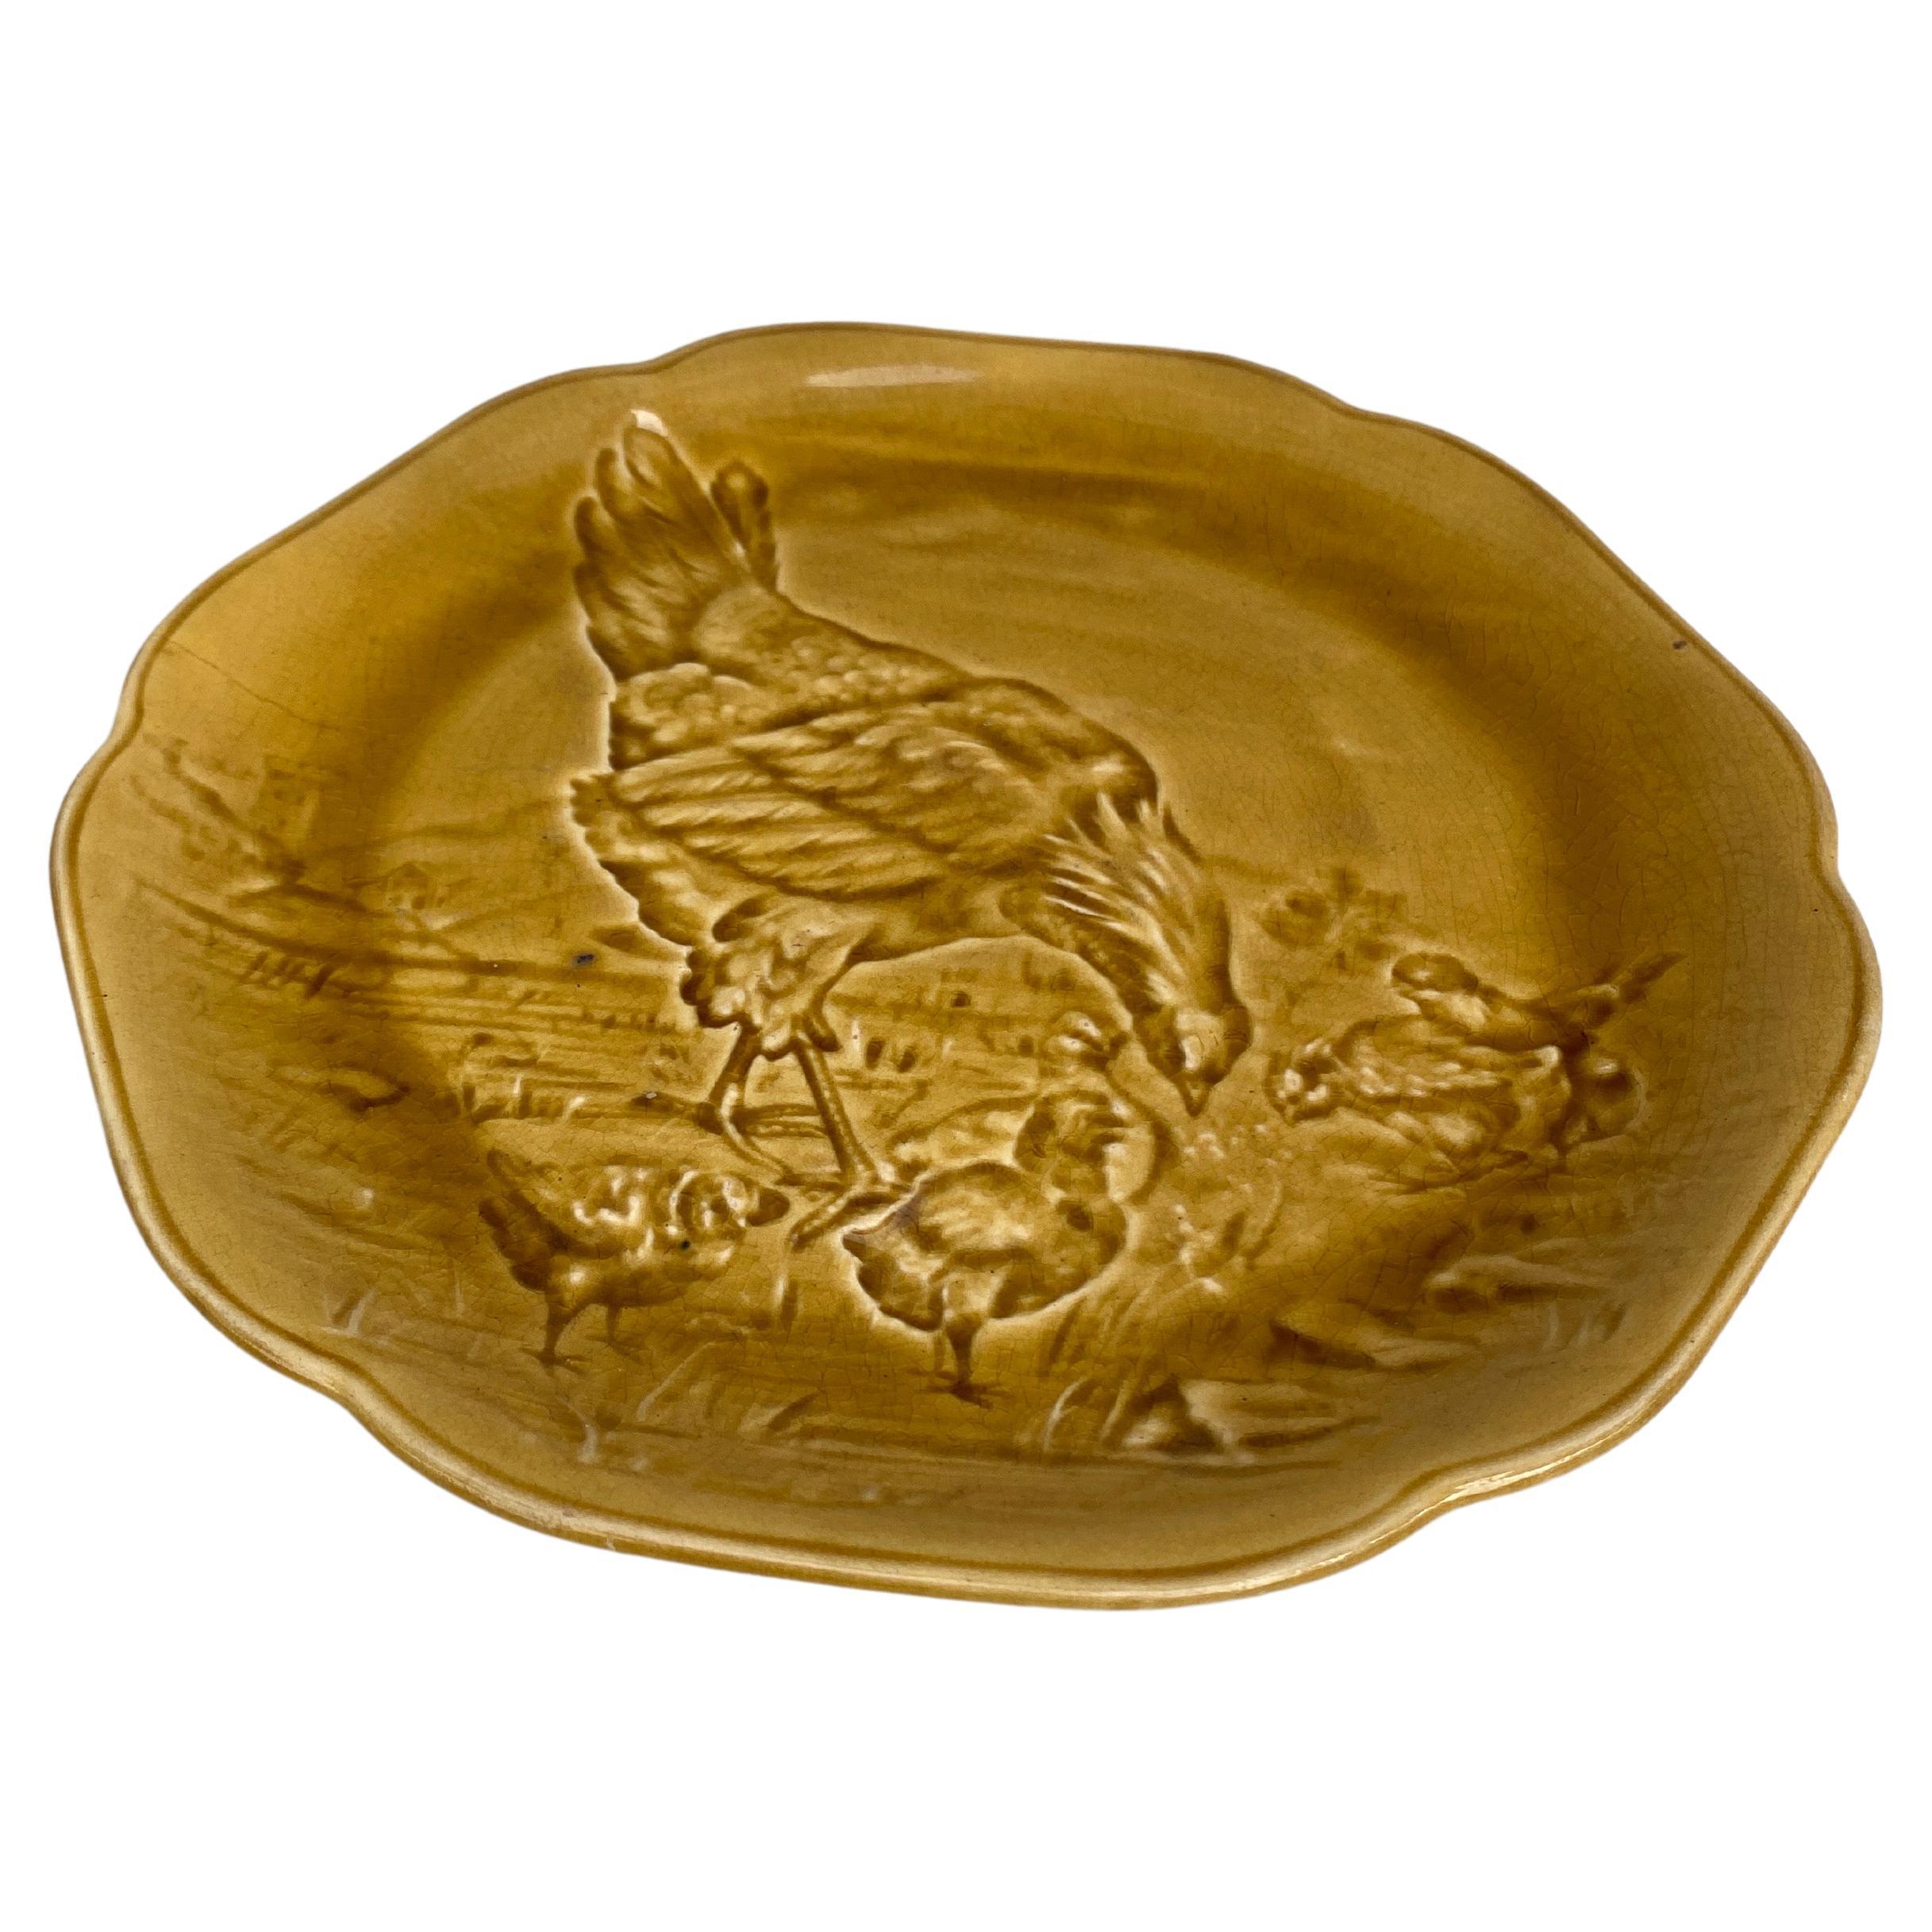 Schöner gelber Majolikateller mit Henne und Küken, signiert Hippolyte Boulenger Choisy-le-Roi, um 1890.
Die Manufaktur von Choisy-le-Roi war eine der wichtigsten Manufakturen am Ende des 19. Jahrhunderts, die sehr hochwertige Keramik aller Art wie